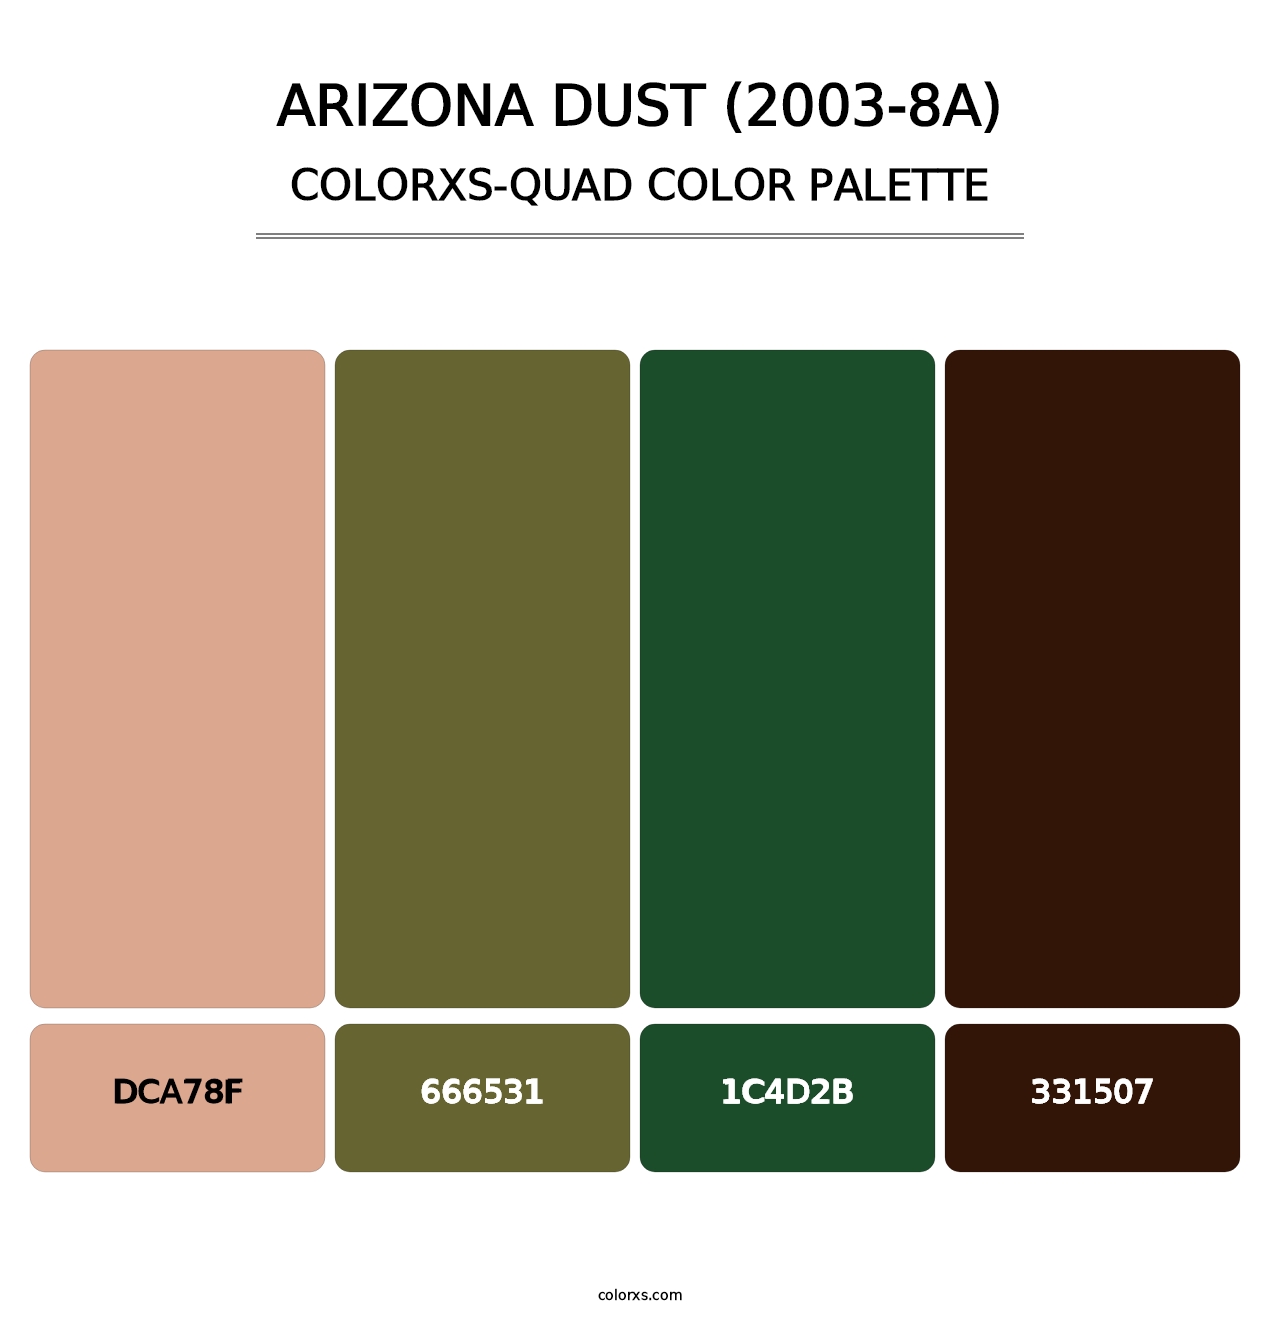 Arizona Dust (2003-8A) - Colorxs Quad Palette